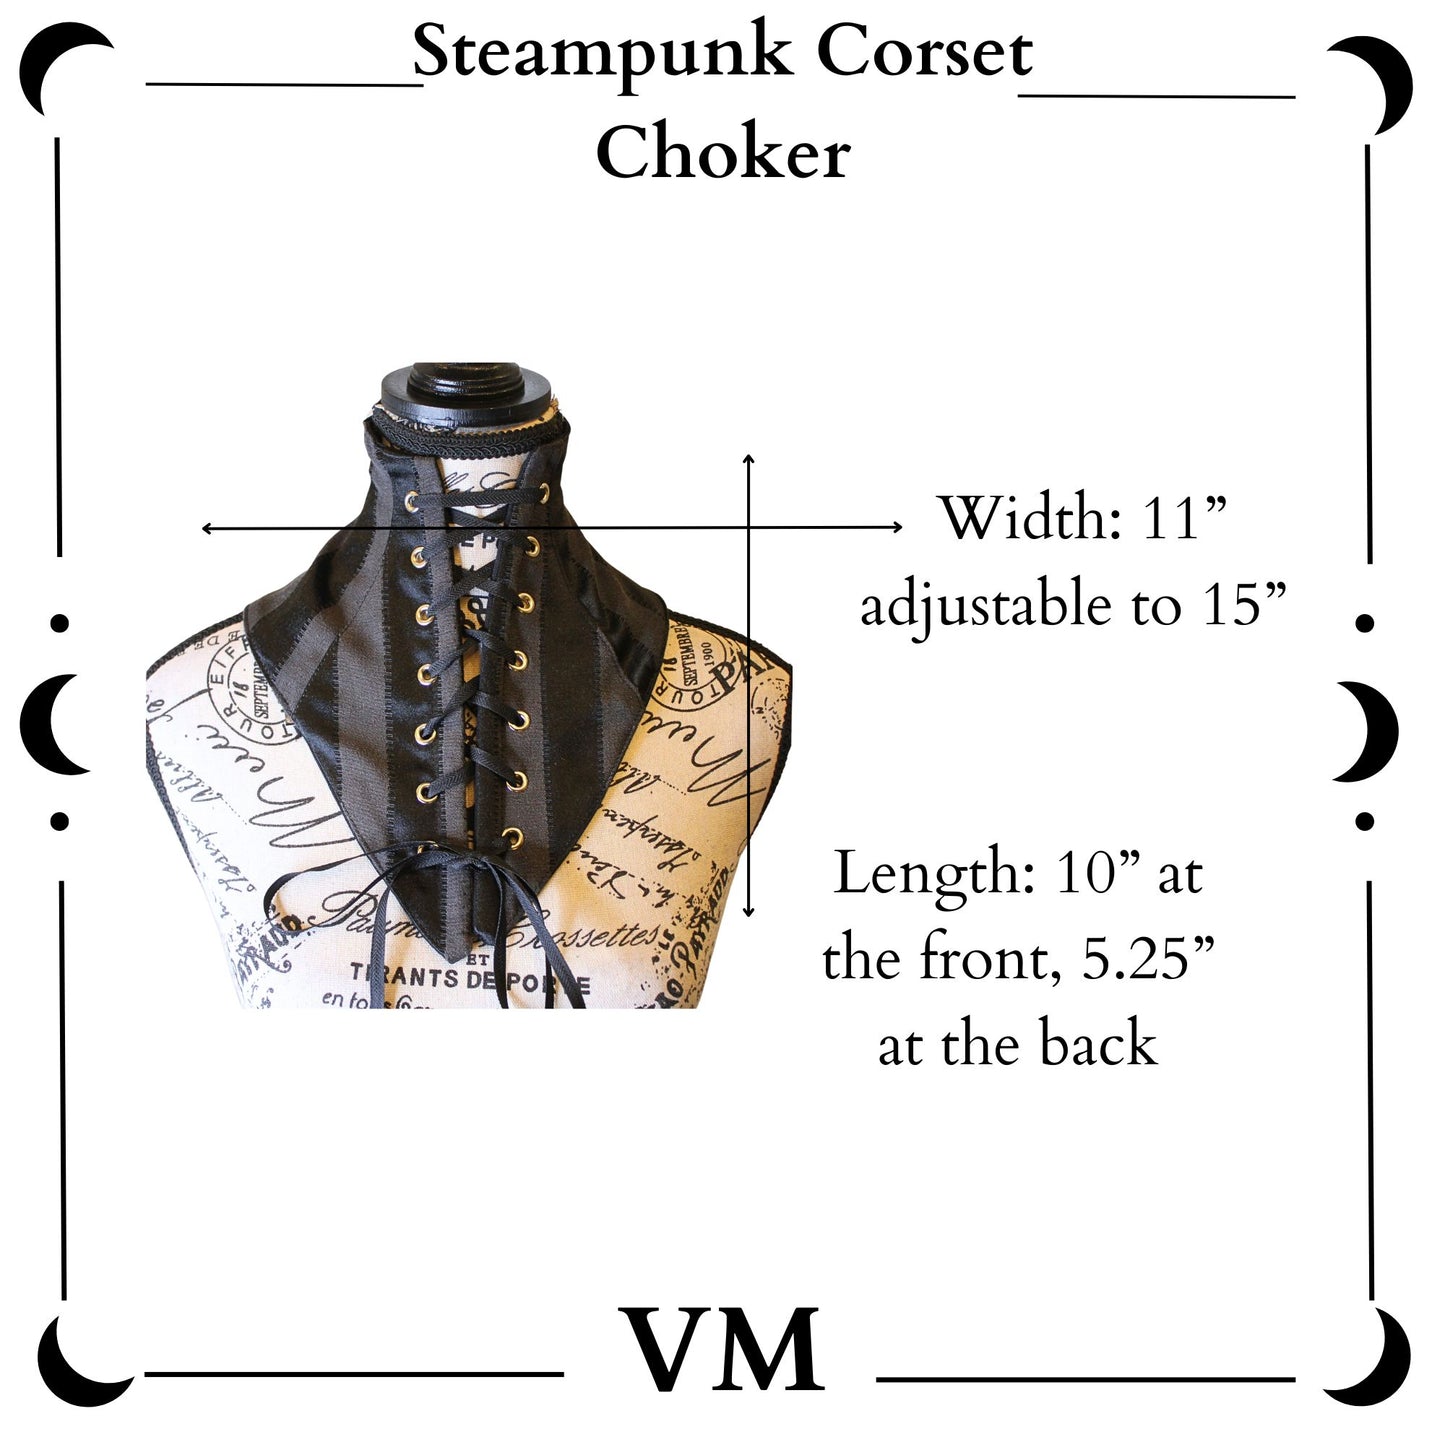 The VM Steampunk Corset Choker